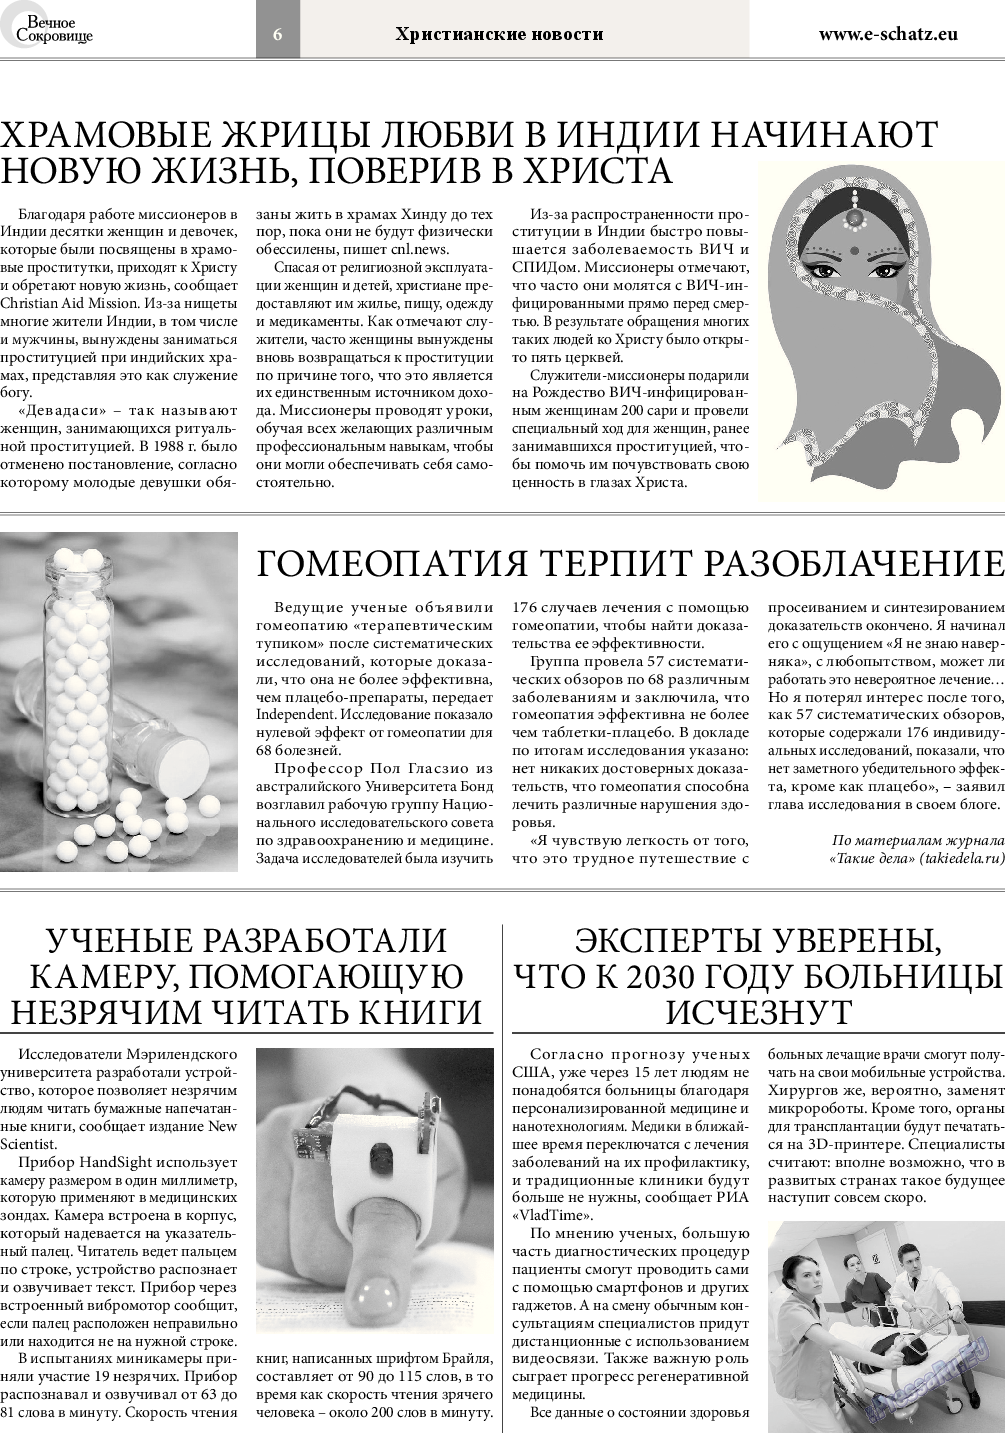 Вечное сокровище, газета. 2017 №2 стр.6